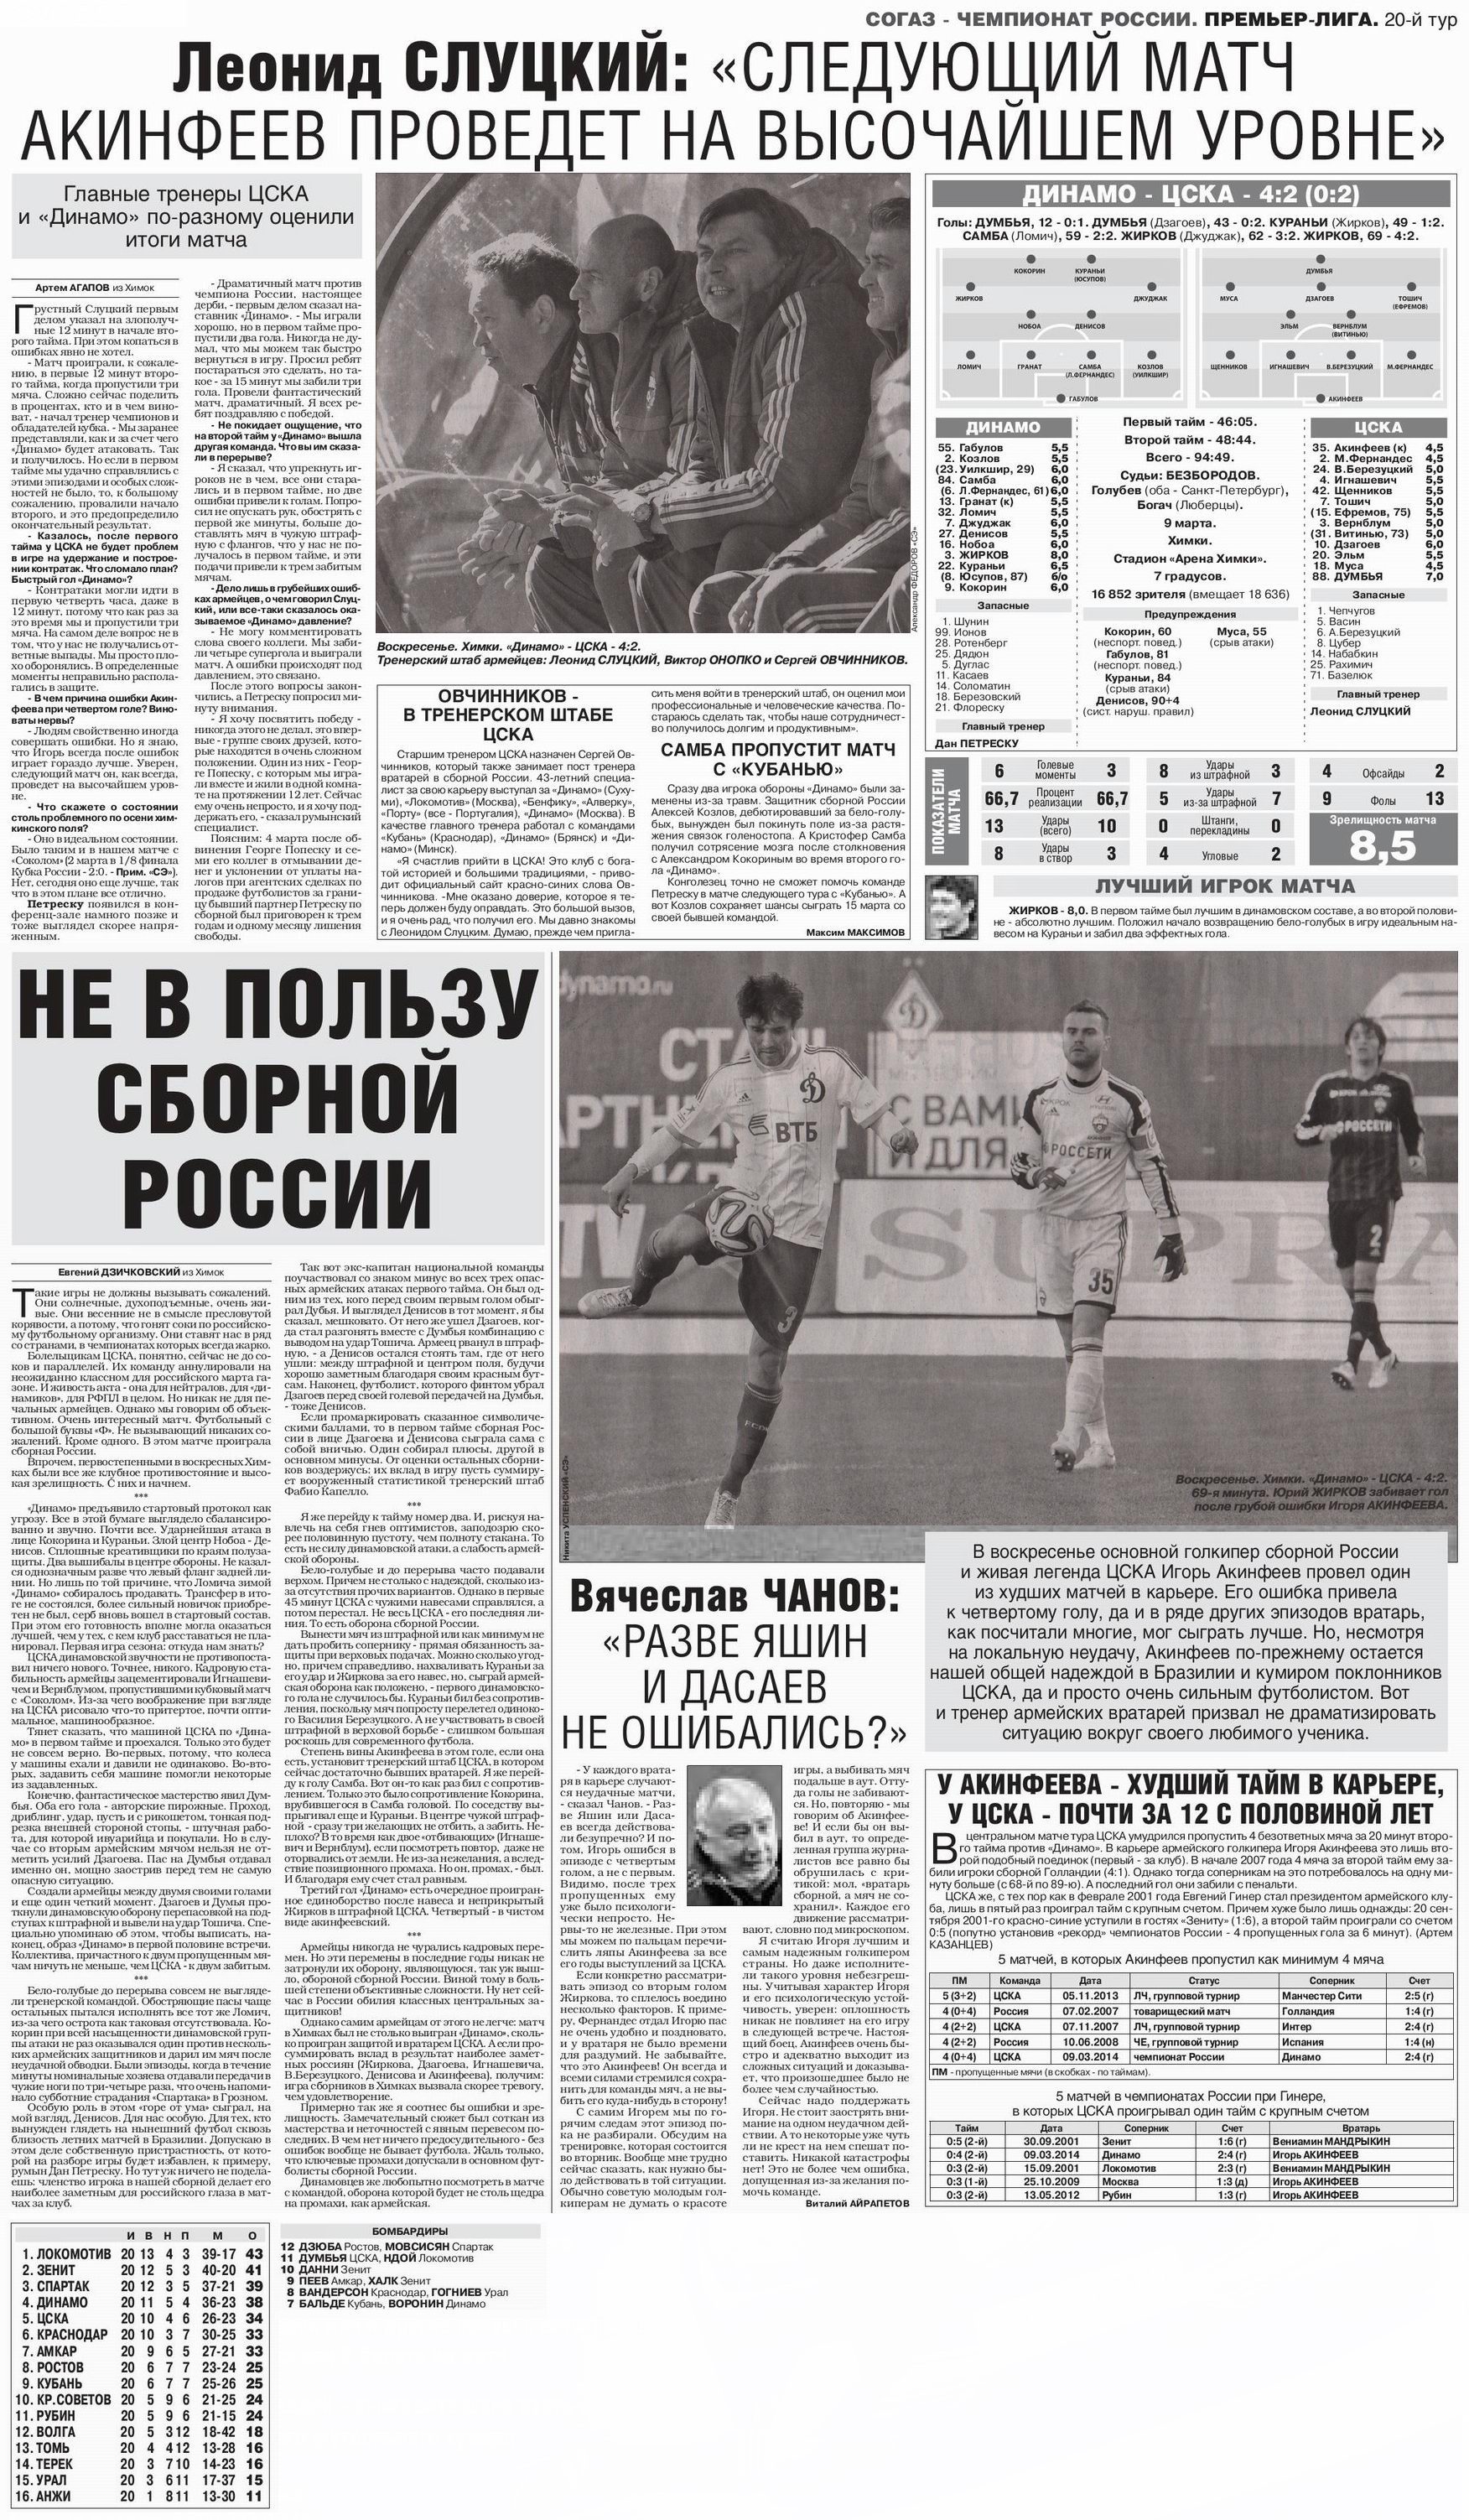 2014-03-09.DinamoM-CSKA